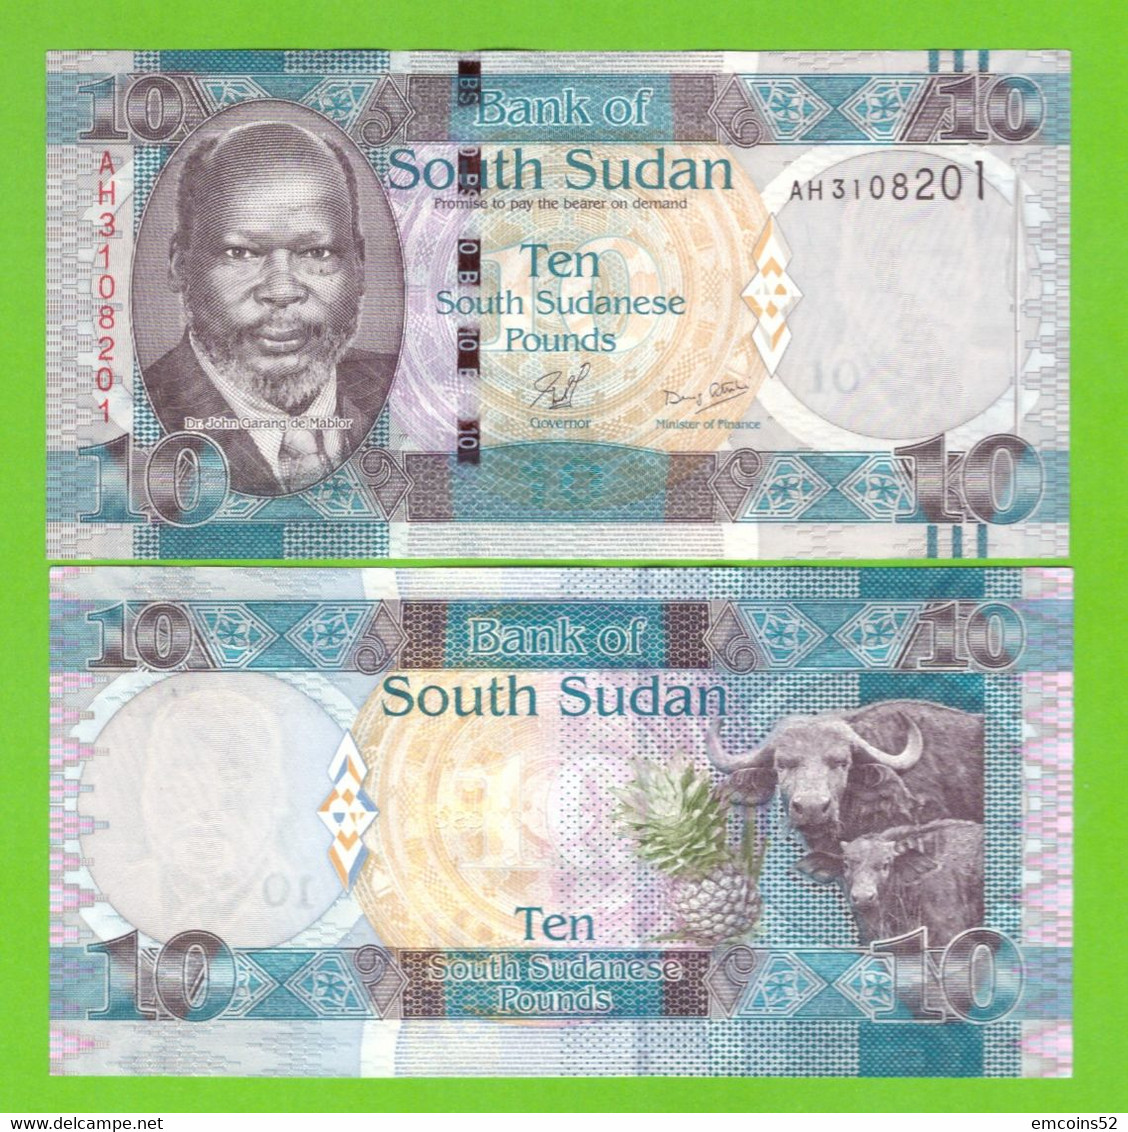 SOUTH SUDAN 10 POUNDS 2011 P-7 UNC - Soudan Du Sud